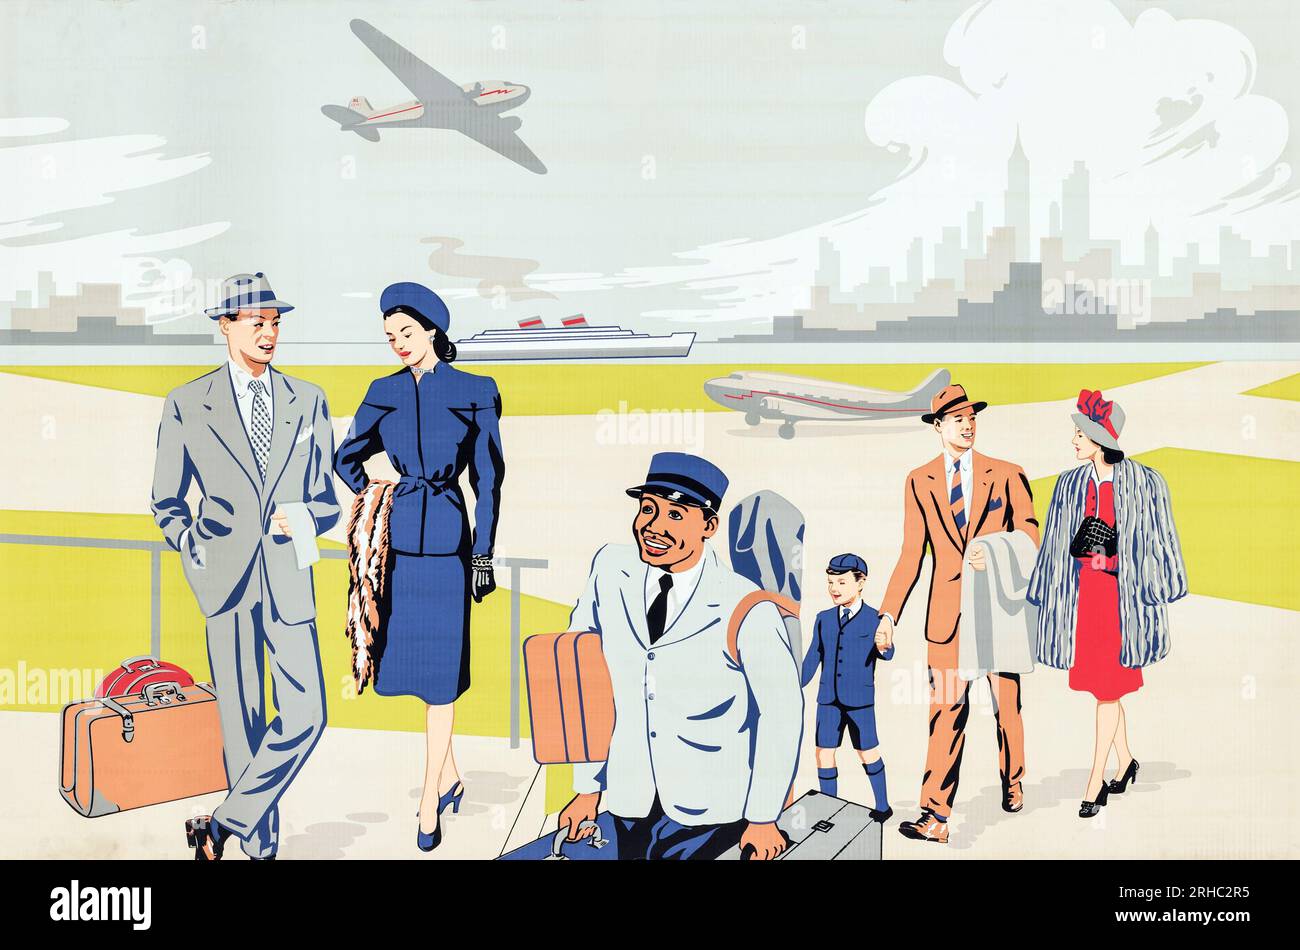 American Airline Travel Poster (années 1950). Illustration d'affiche de voyage avec un aéroport avec des passagers Banque D'Images